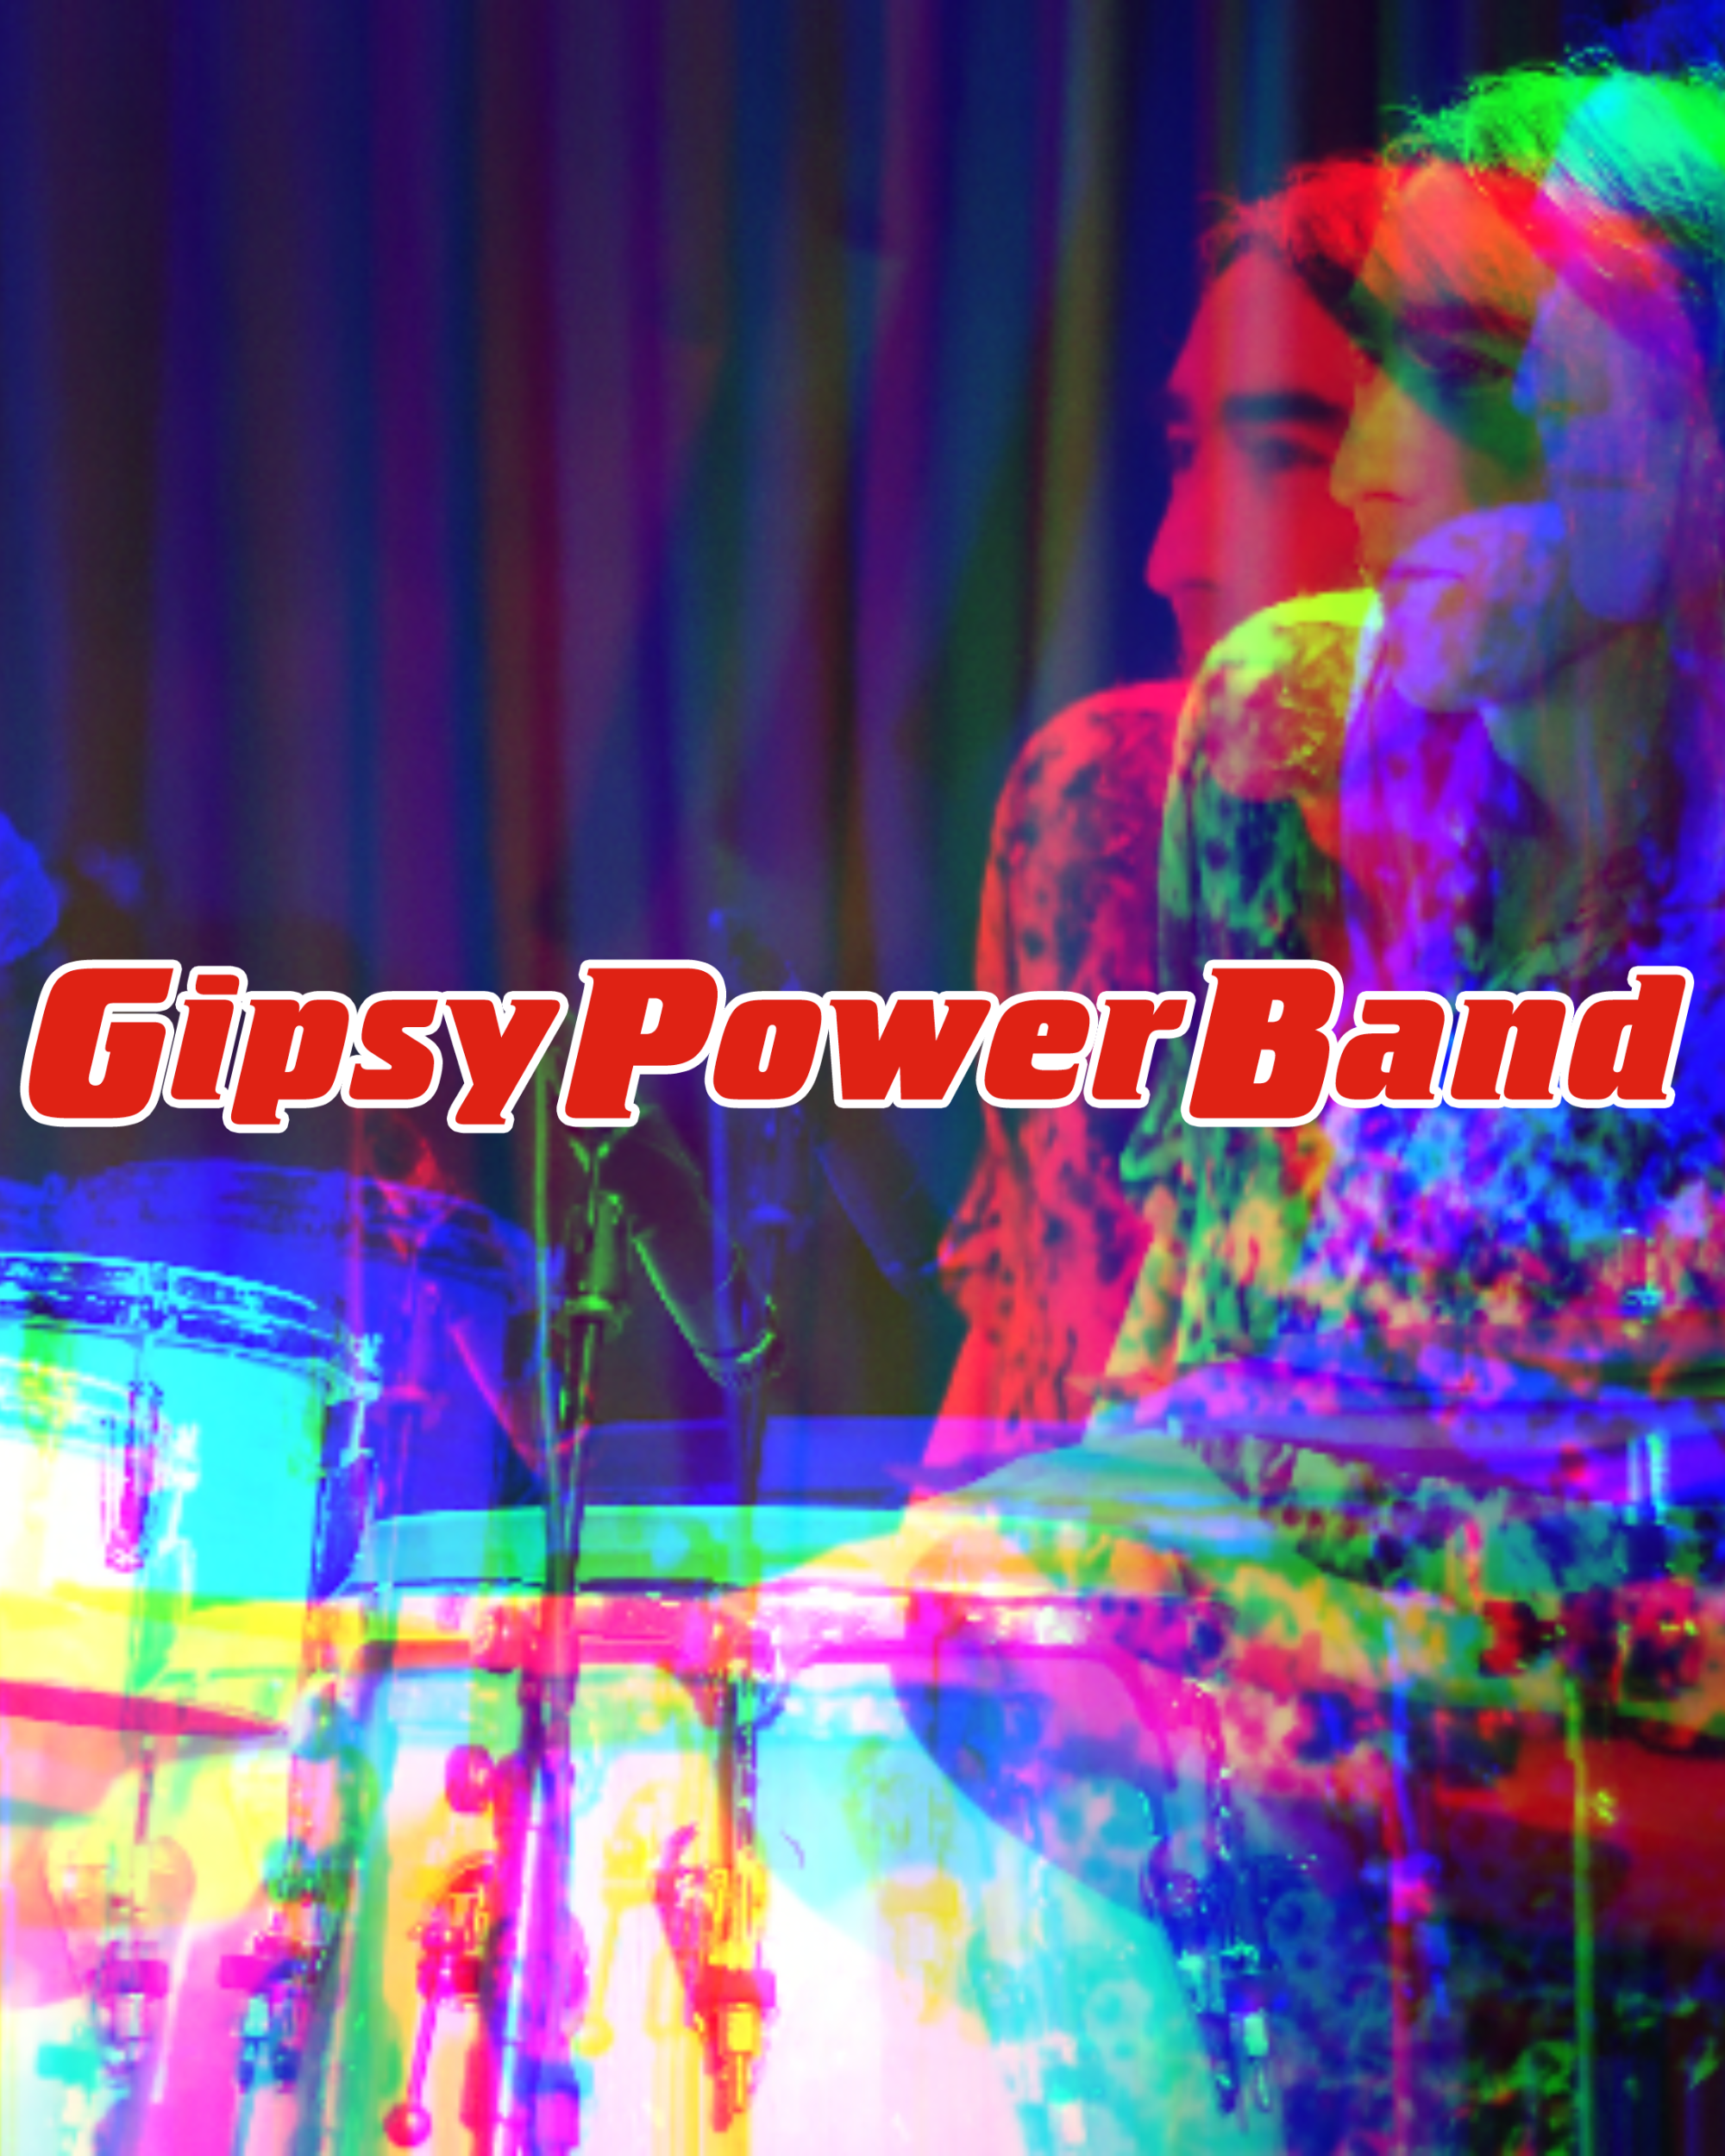 Gipsy Power Band